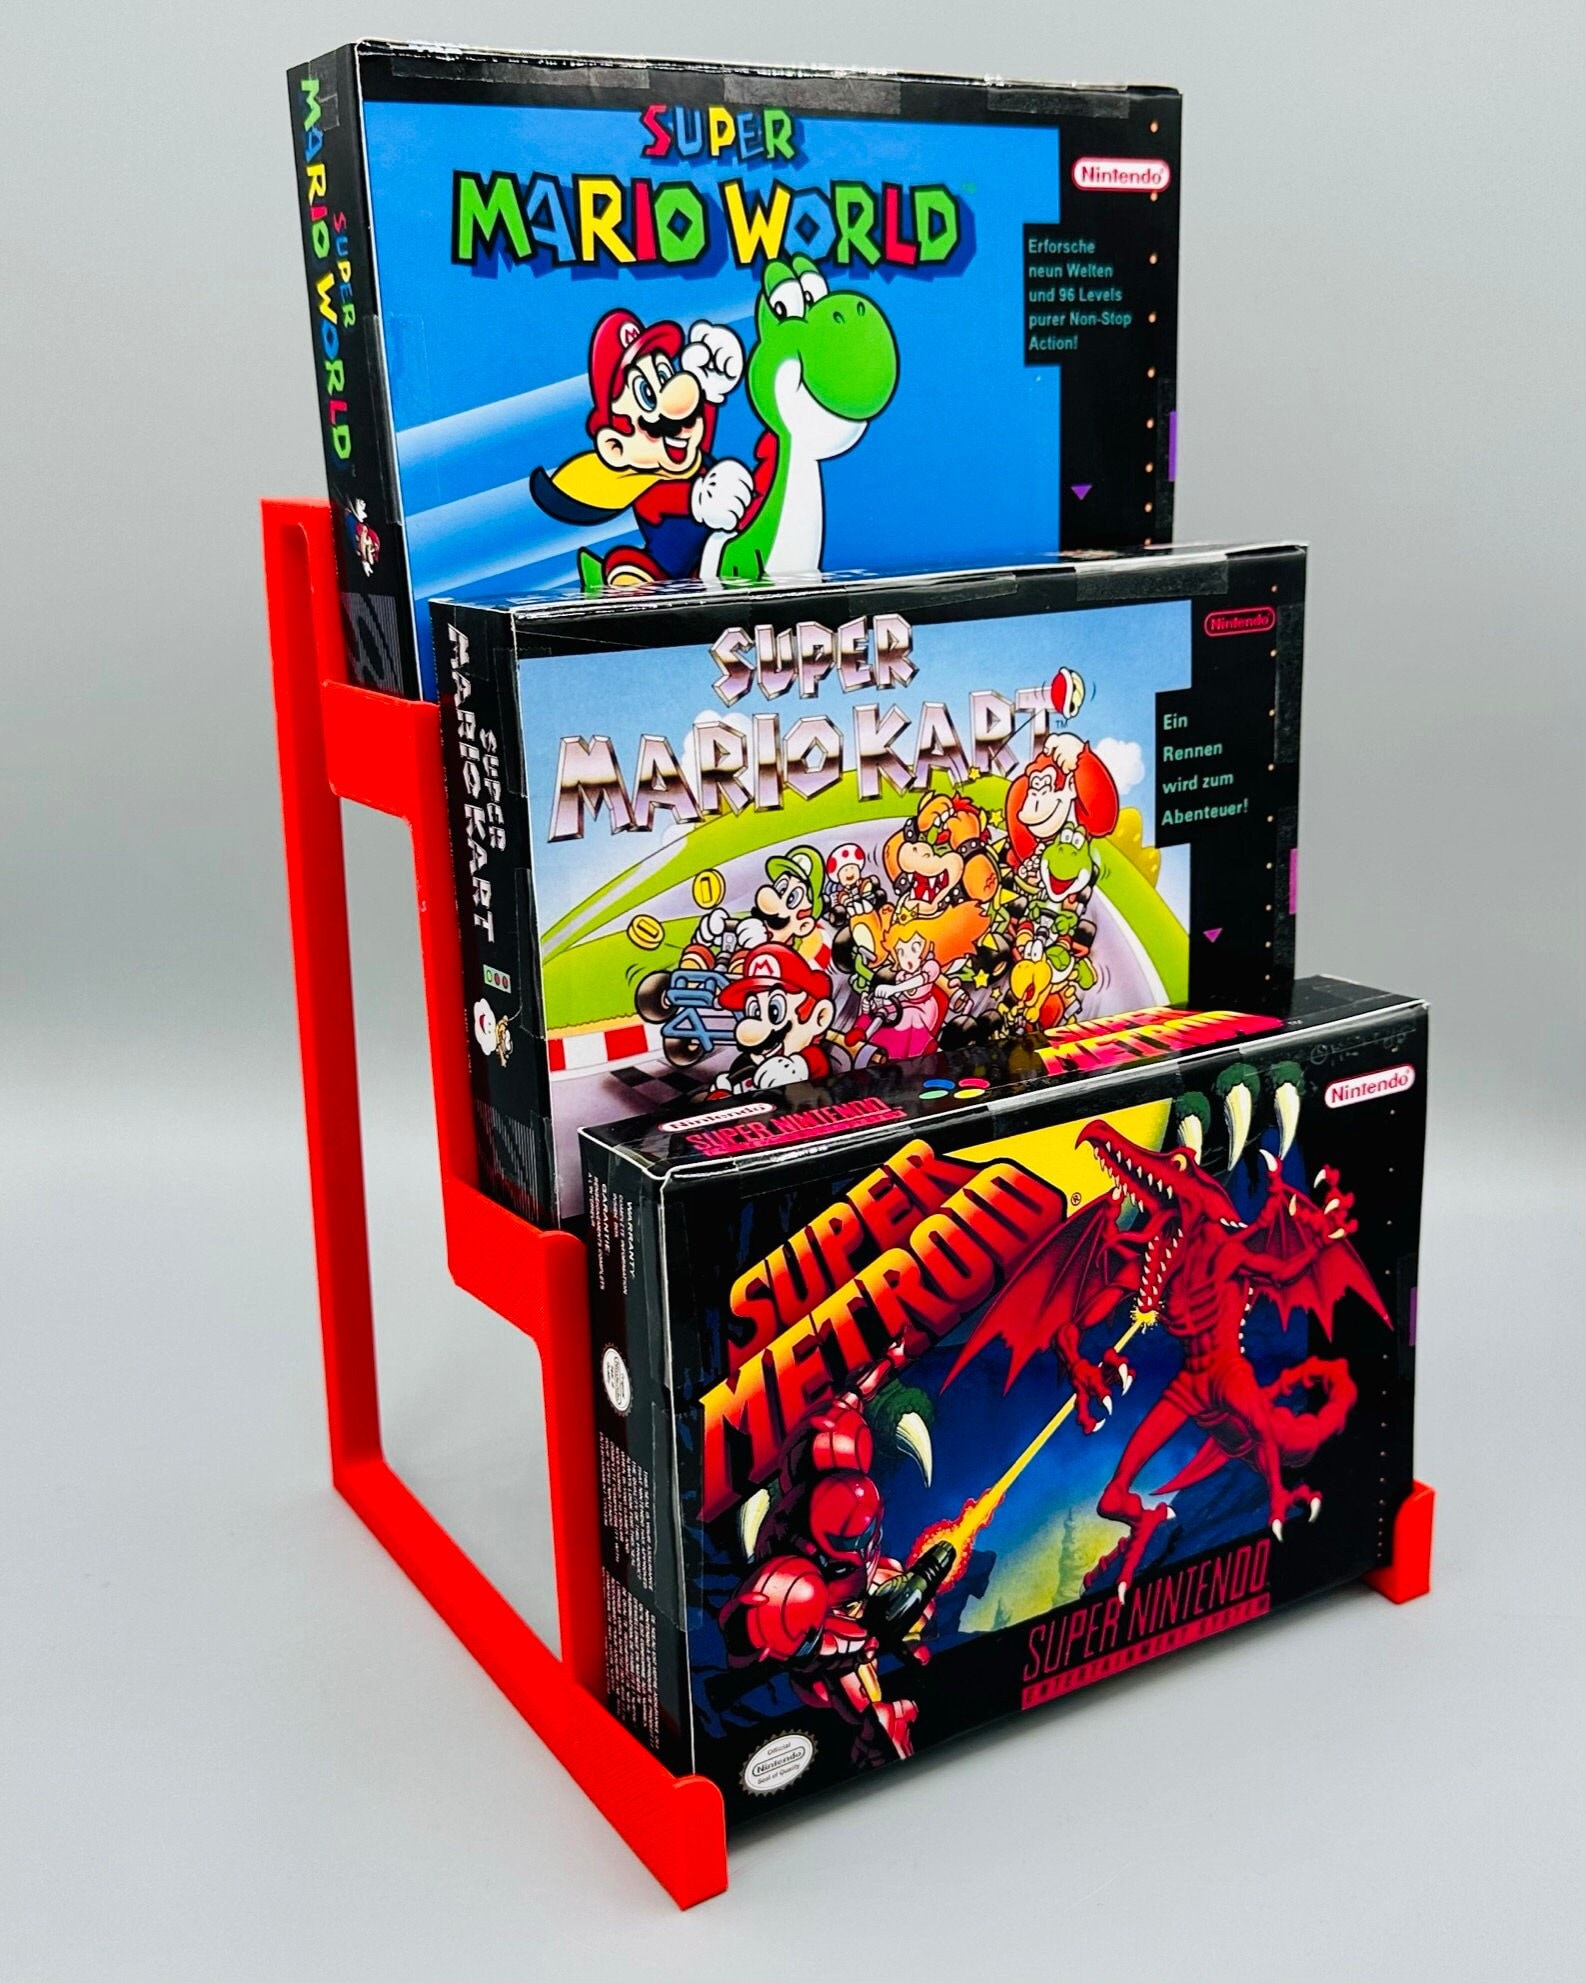 2 X Manette SNES (Super Nes) contrôleur pour Super Nintendo - Straße Game ®  - Manette - Achat & prix